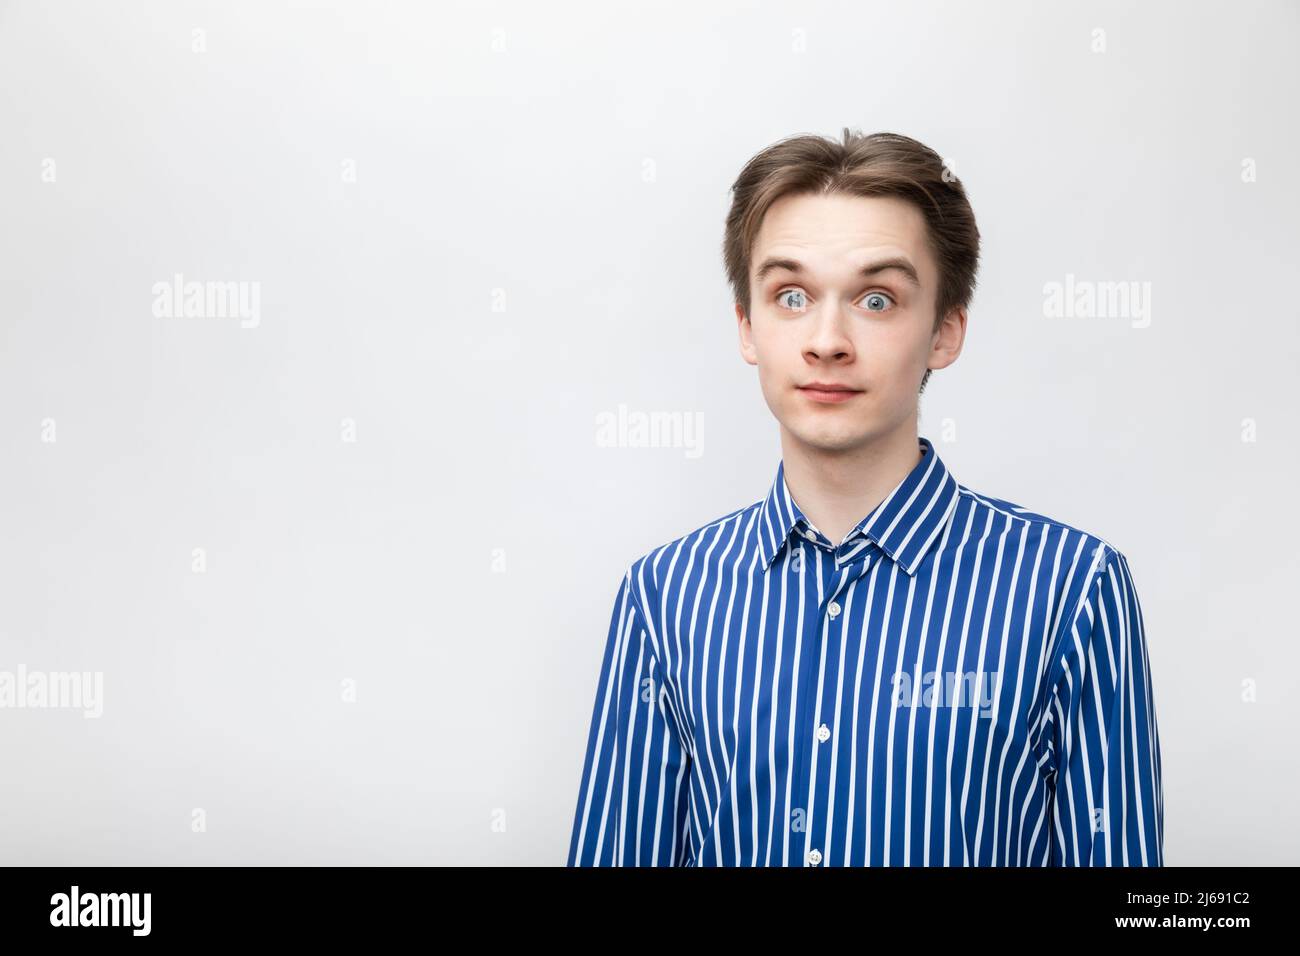 Ritratto di stupito stupito giovane uomo con camicia a bottoni blu-bianco a righe con occhi aperti. Studio girato su sfondo grigio Foto Stock